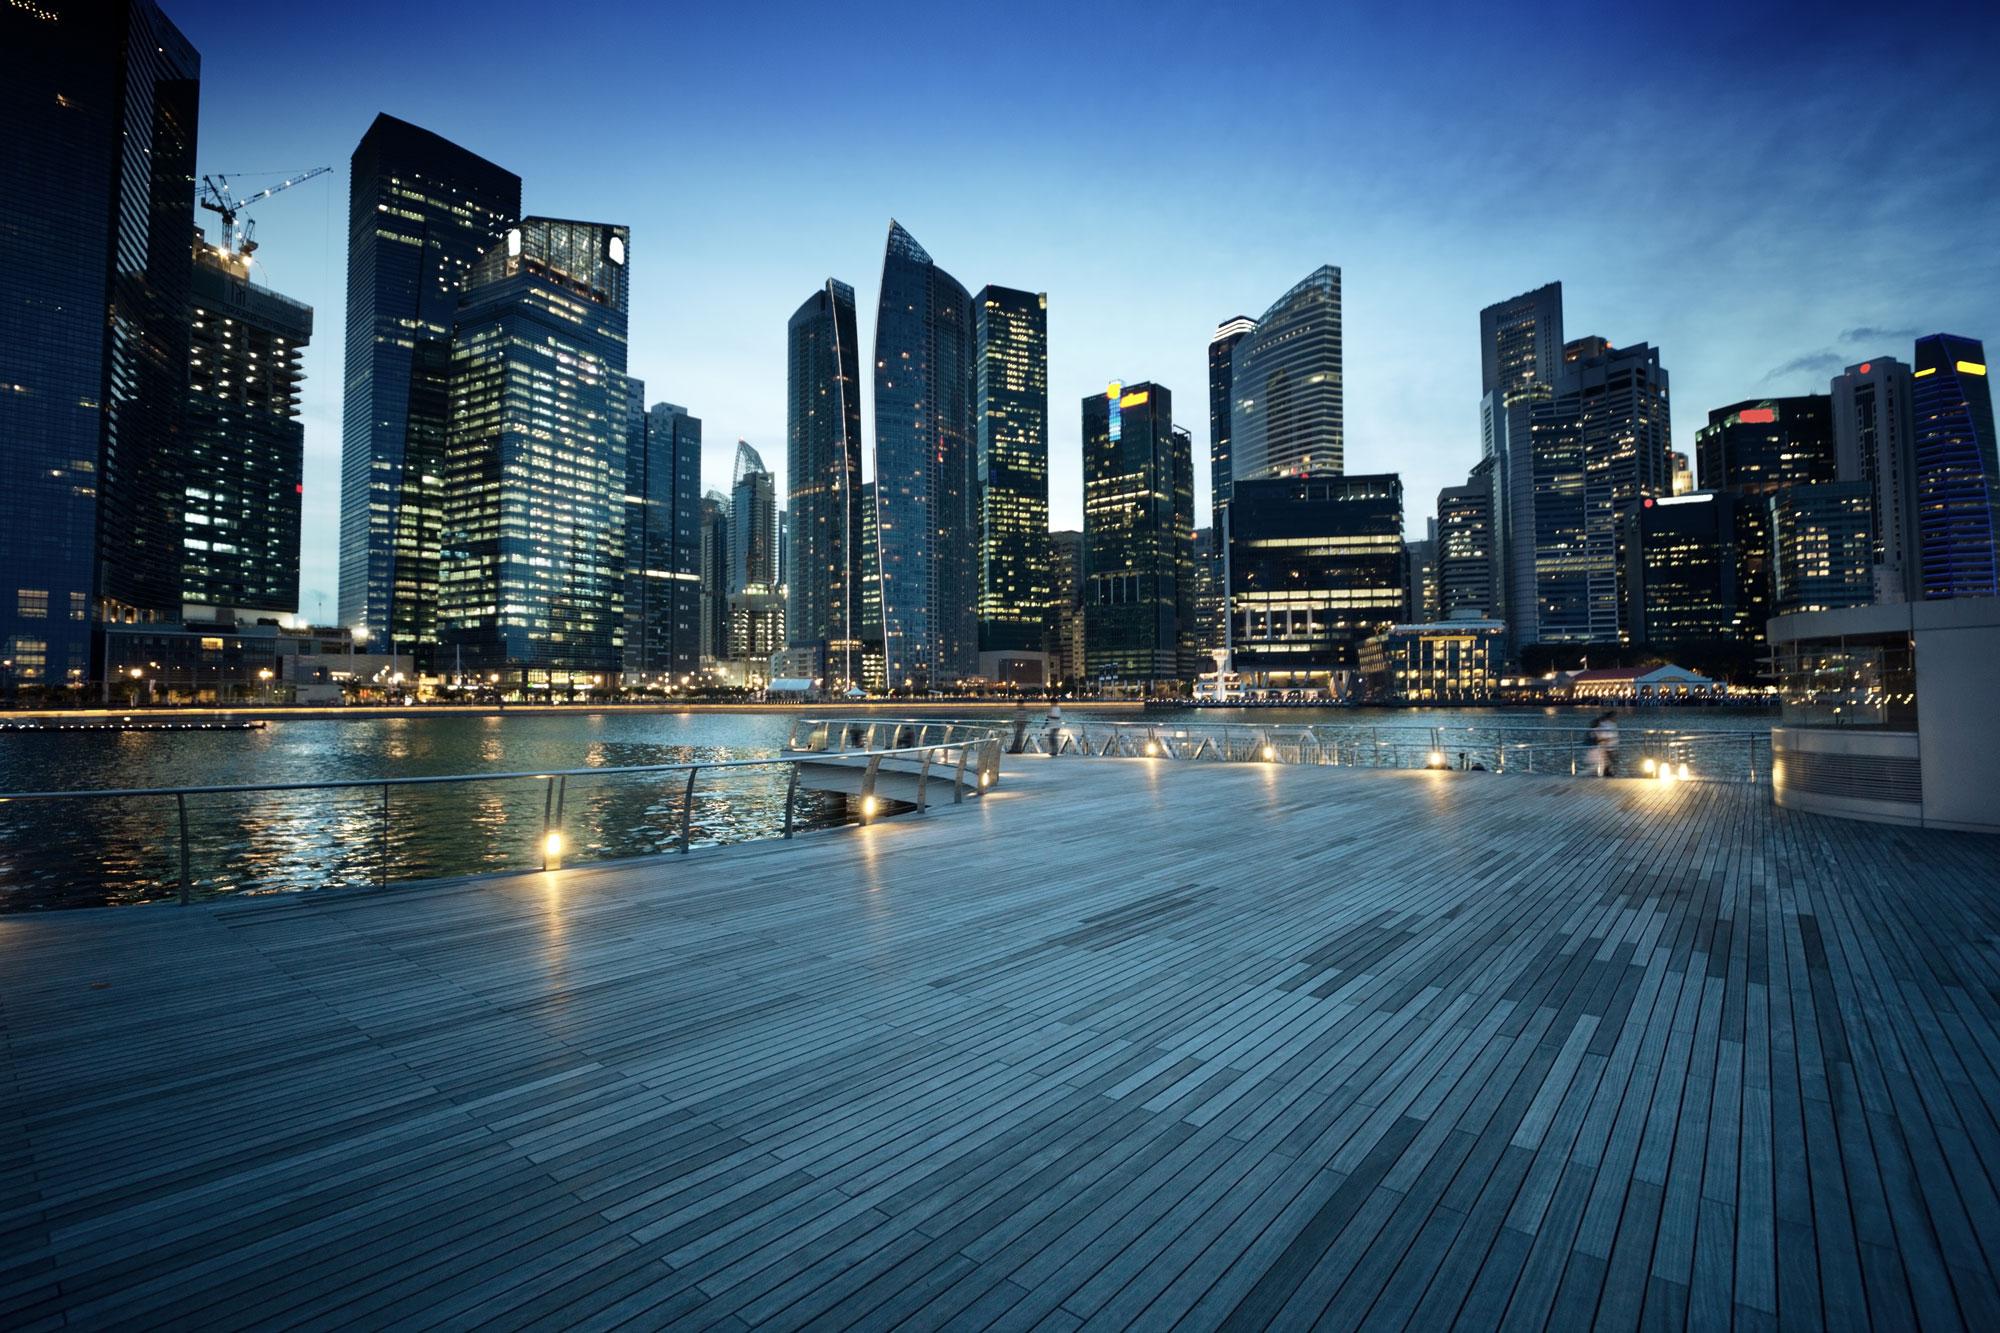 Singapour est devenue une place financière incontournable. [Iakov Kalinin]